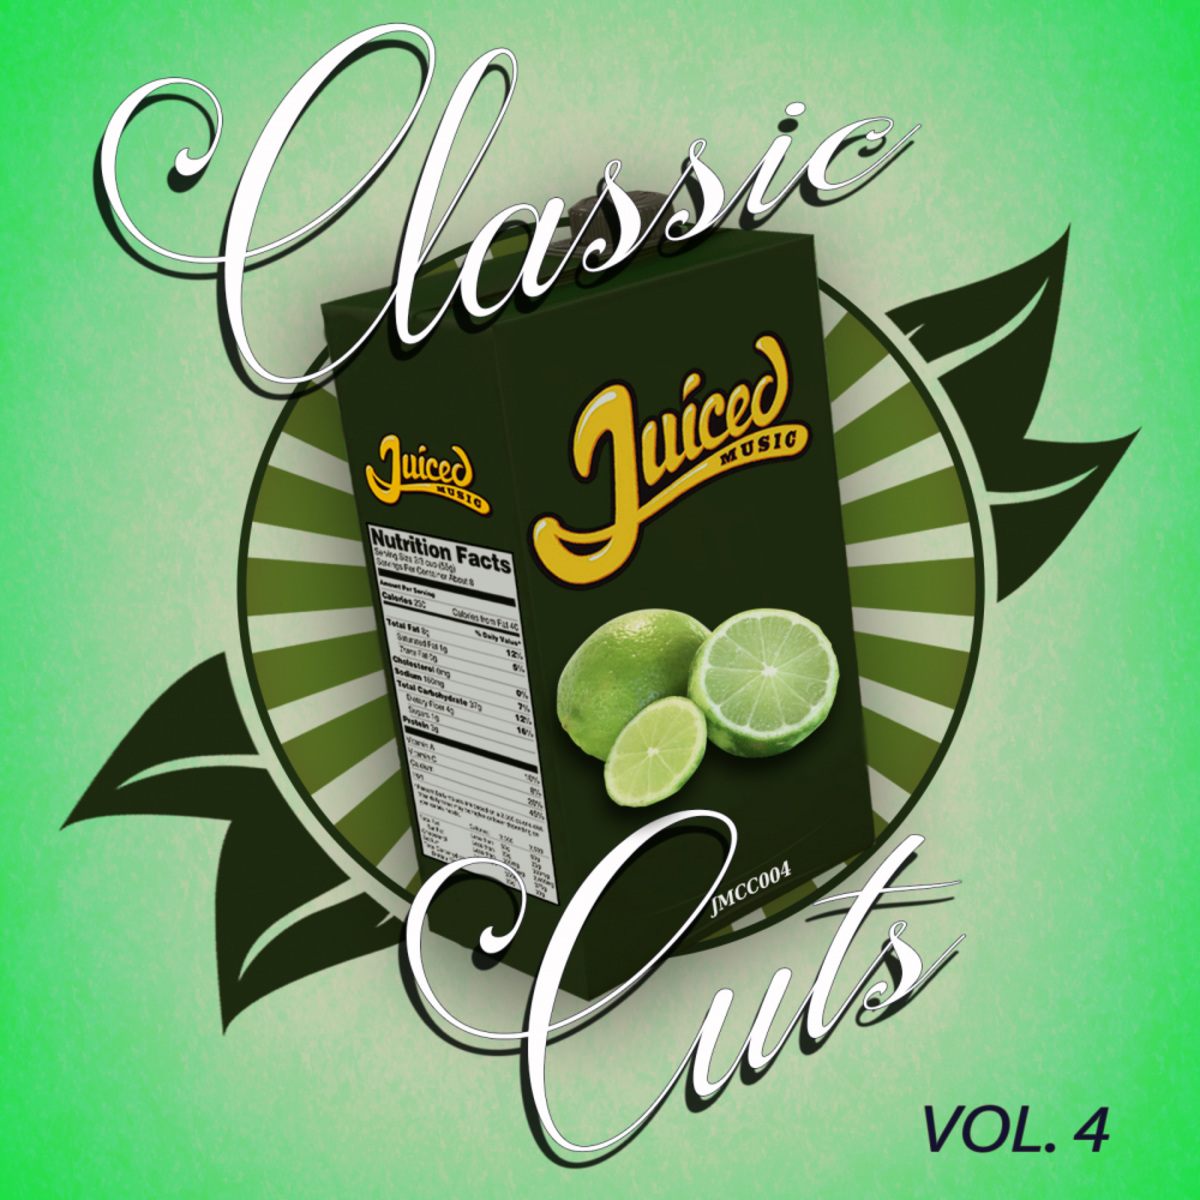 VA - Classic Cuts, Vol. 4 / Juiced Music